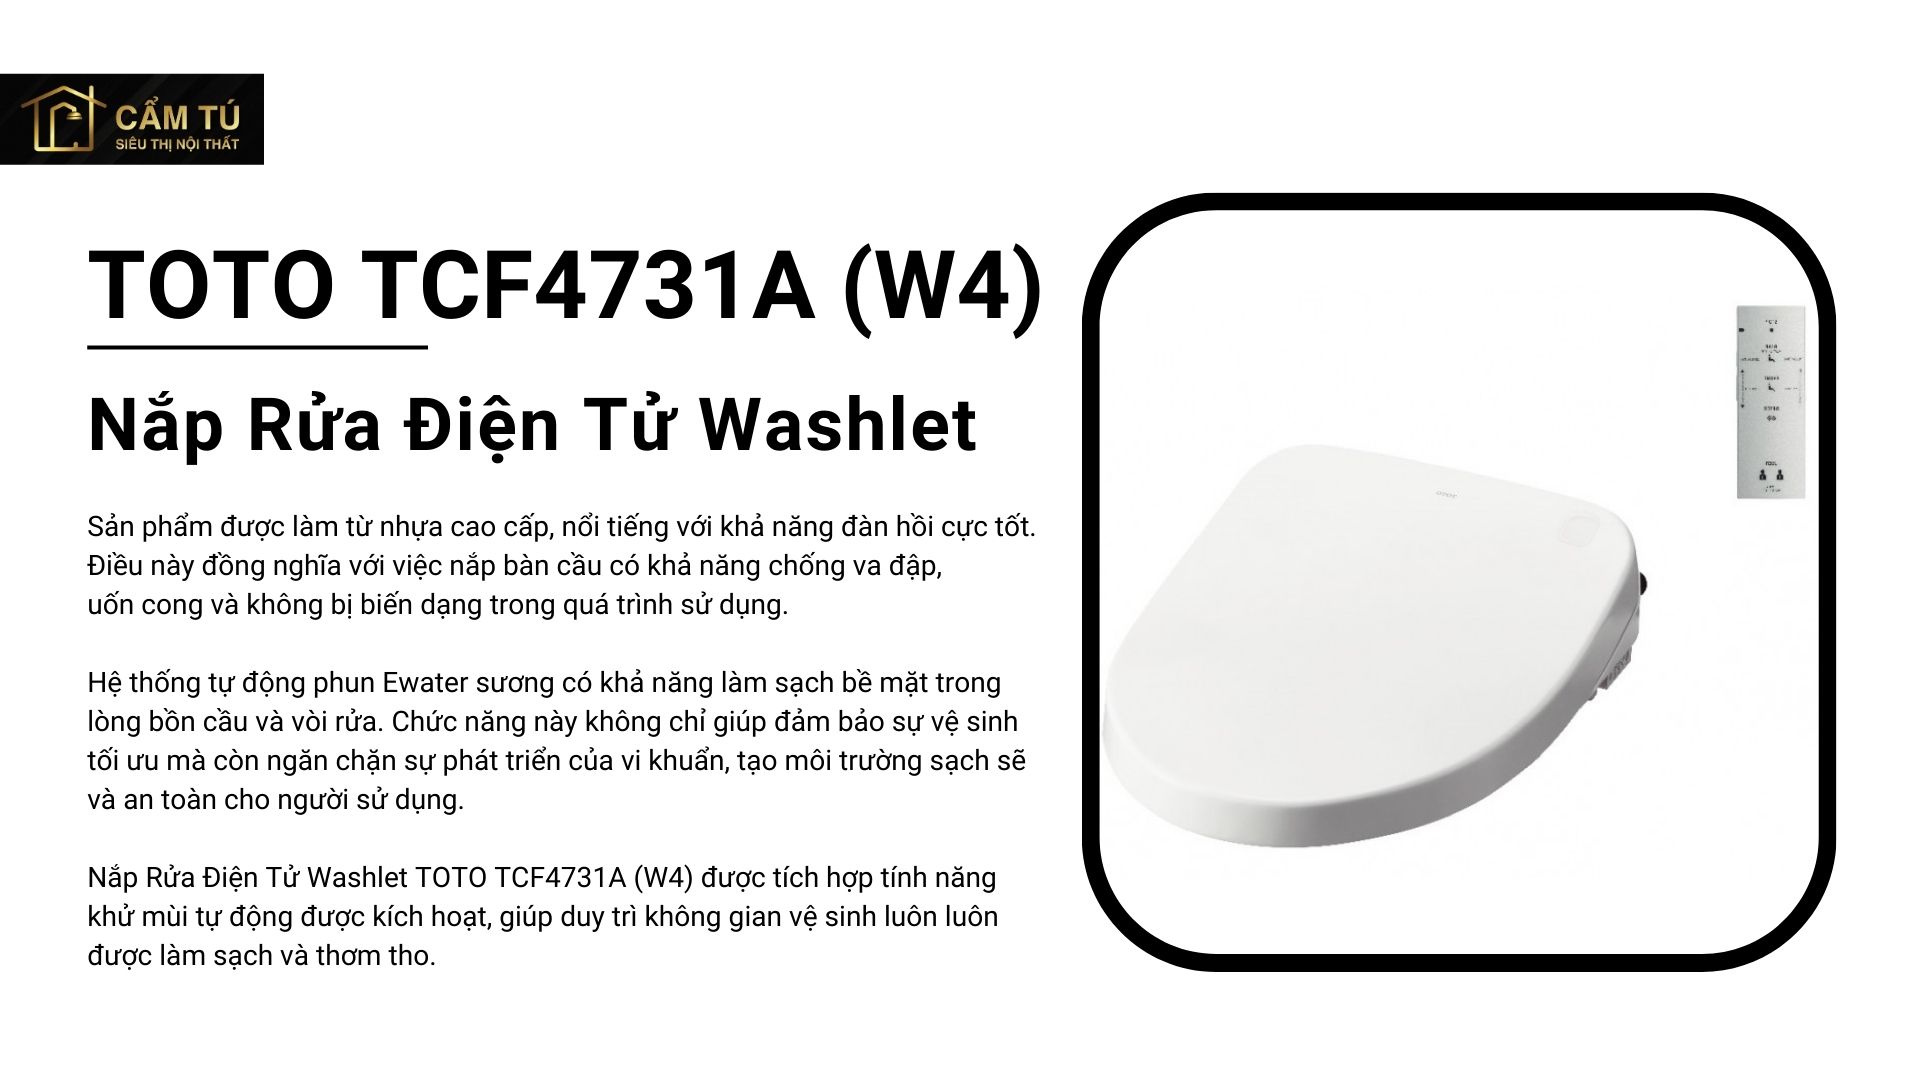 Nắp Rửa Điện Tử Washlet TOTO TCF4731A (W4)